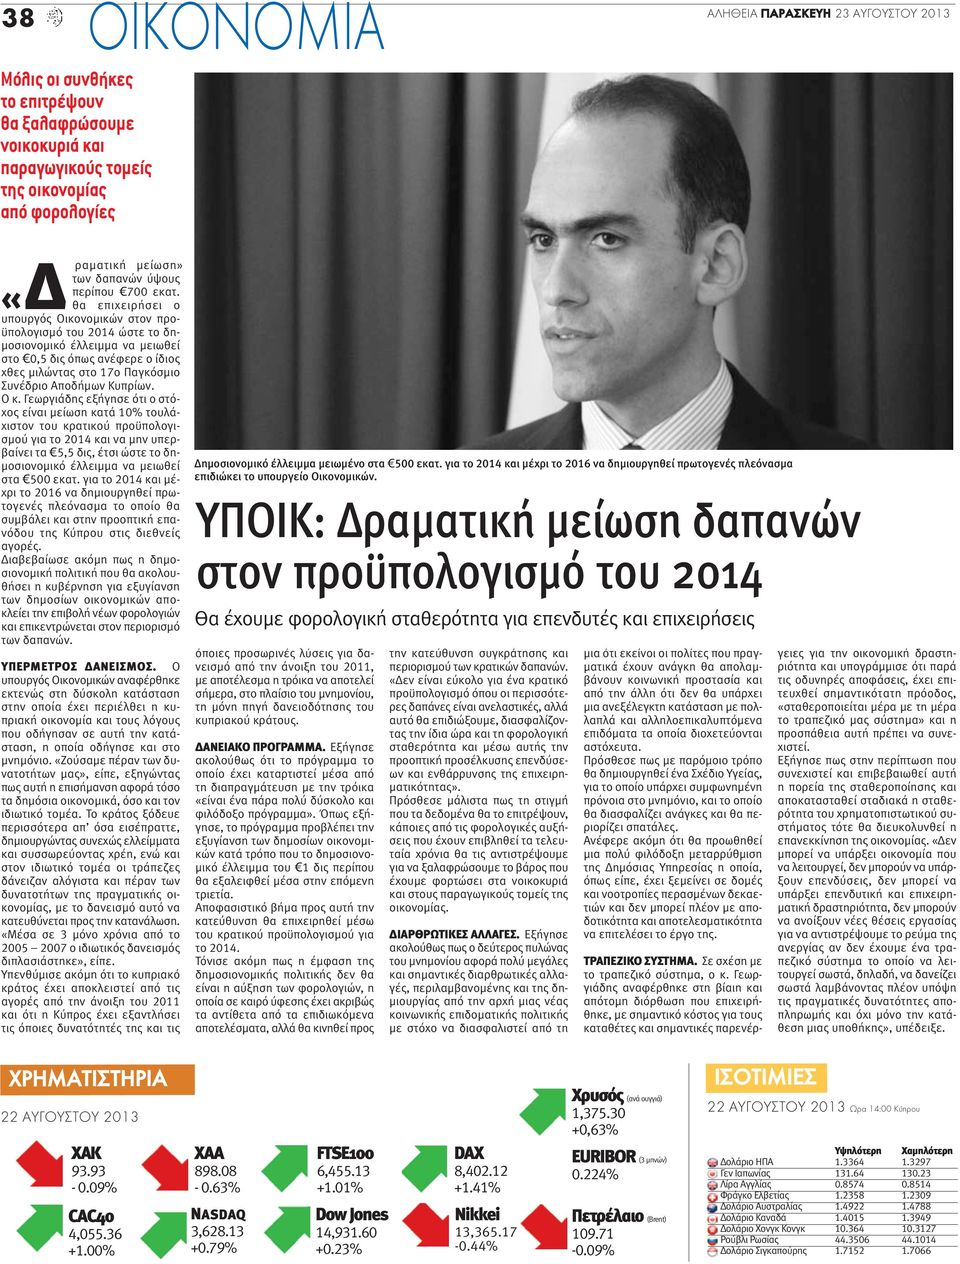 Ο κ. Γεωργιάδης εξήγησε ότι ο στόχος είναι μείωση κατά 10% τουλάχιστον του κρατικού προϋπολογισμού για το 2014 και να μην υπερβαίνει τα 5,5 δις, έτσι ώστε το δημοσιονομικό έλλειμμα να μειωθεί στα 500